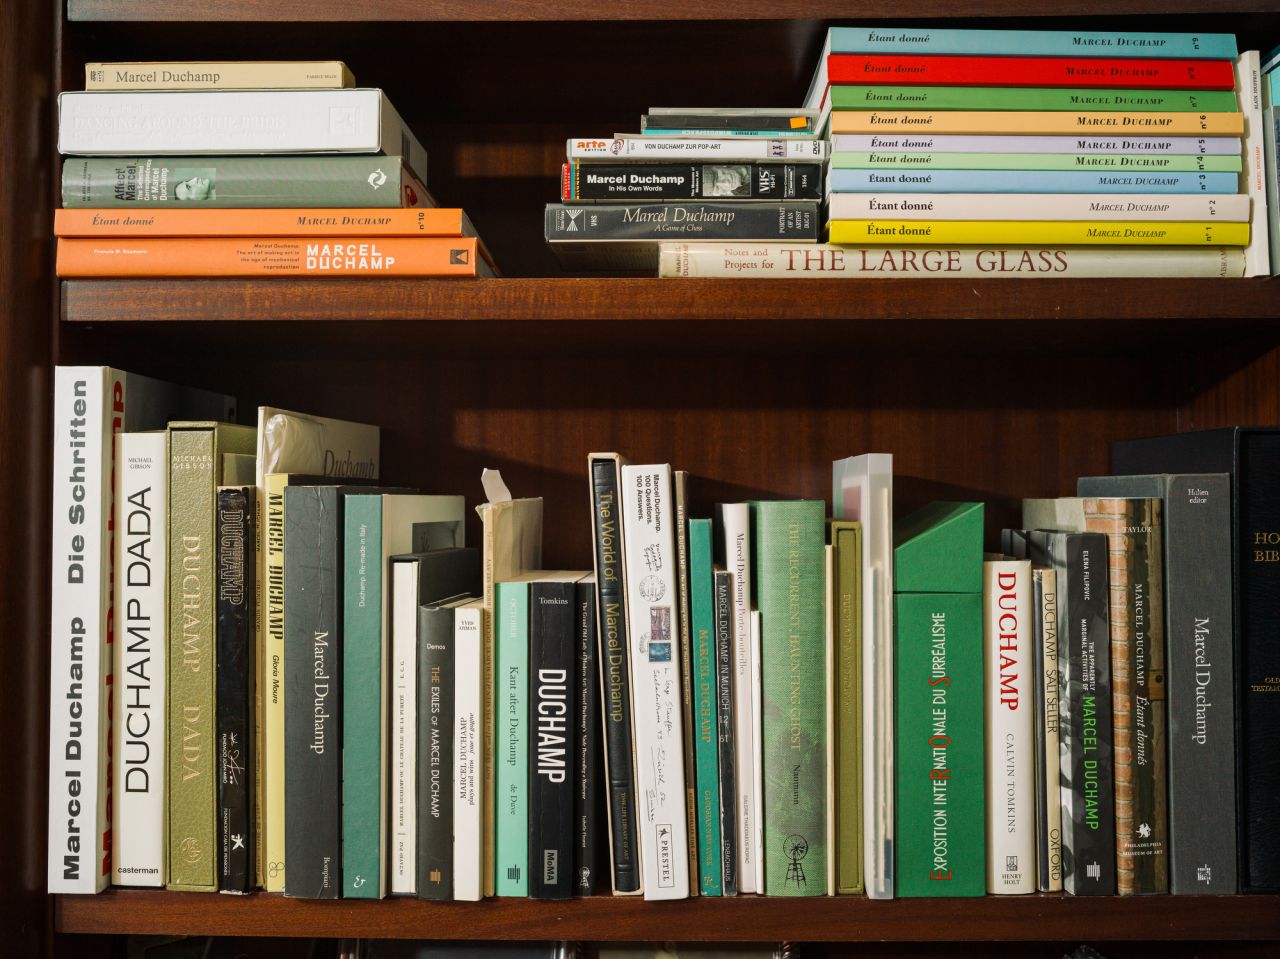 Bookshelf full of Marcel Duchamp's art books.